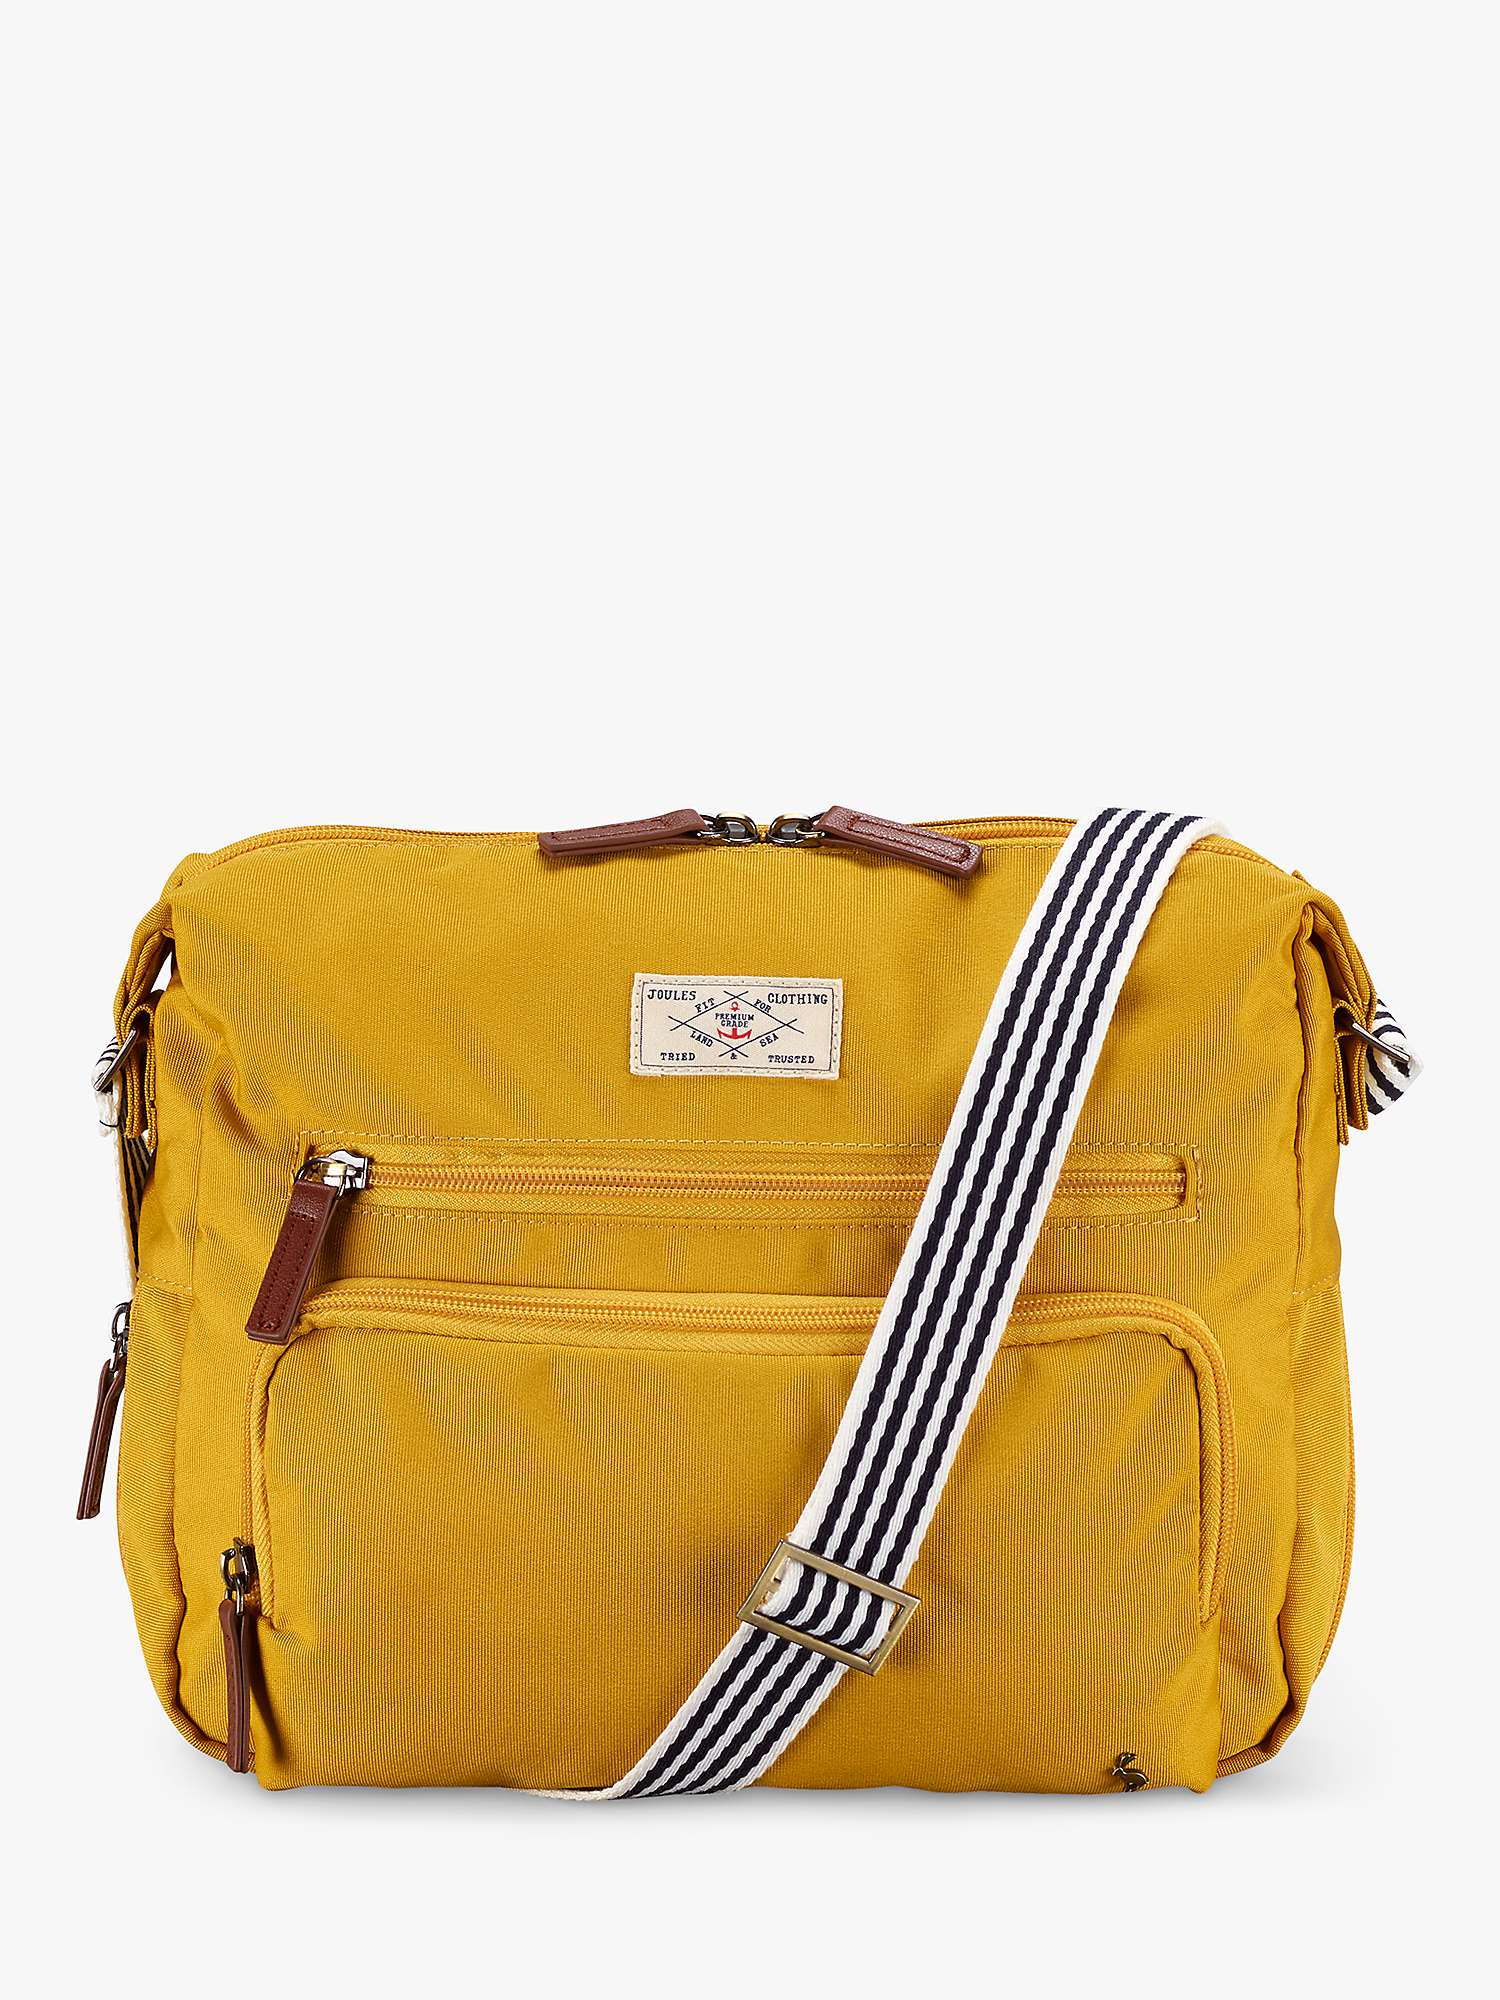 Buy Joules Coast Collection Shoulder Bag Online at johnlewis.com